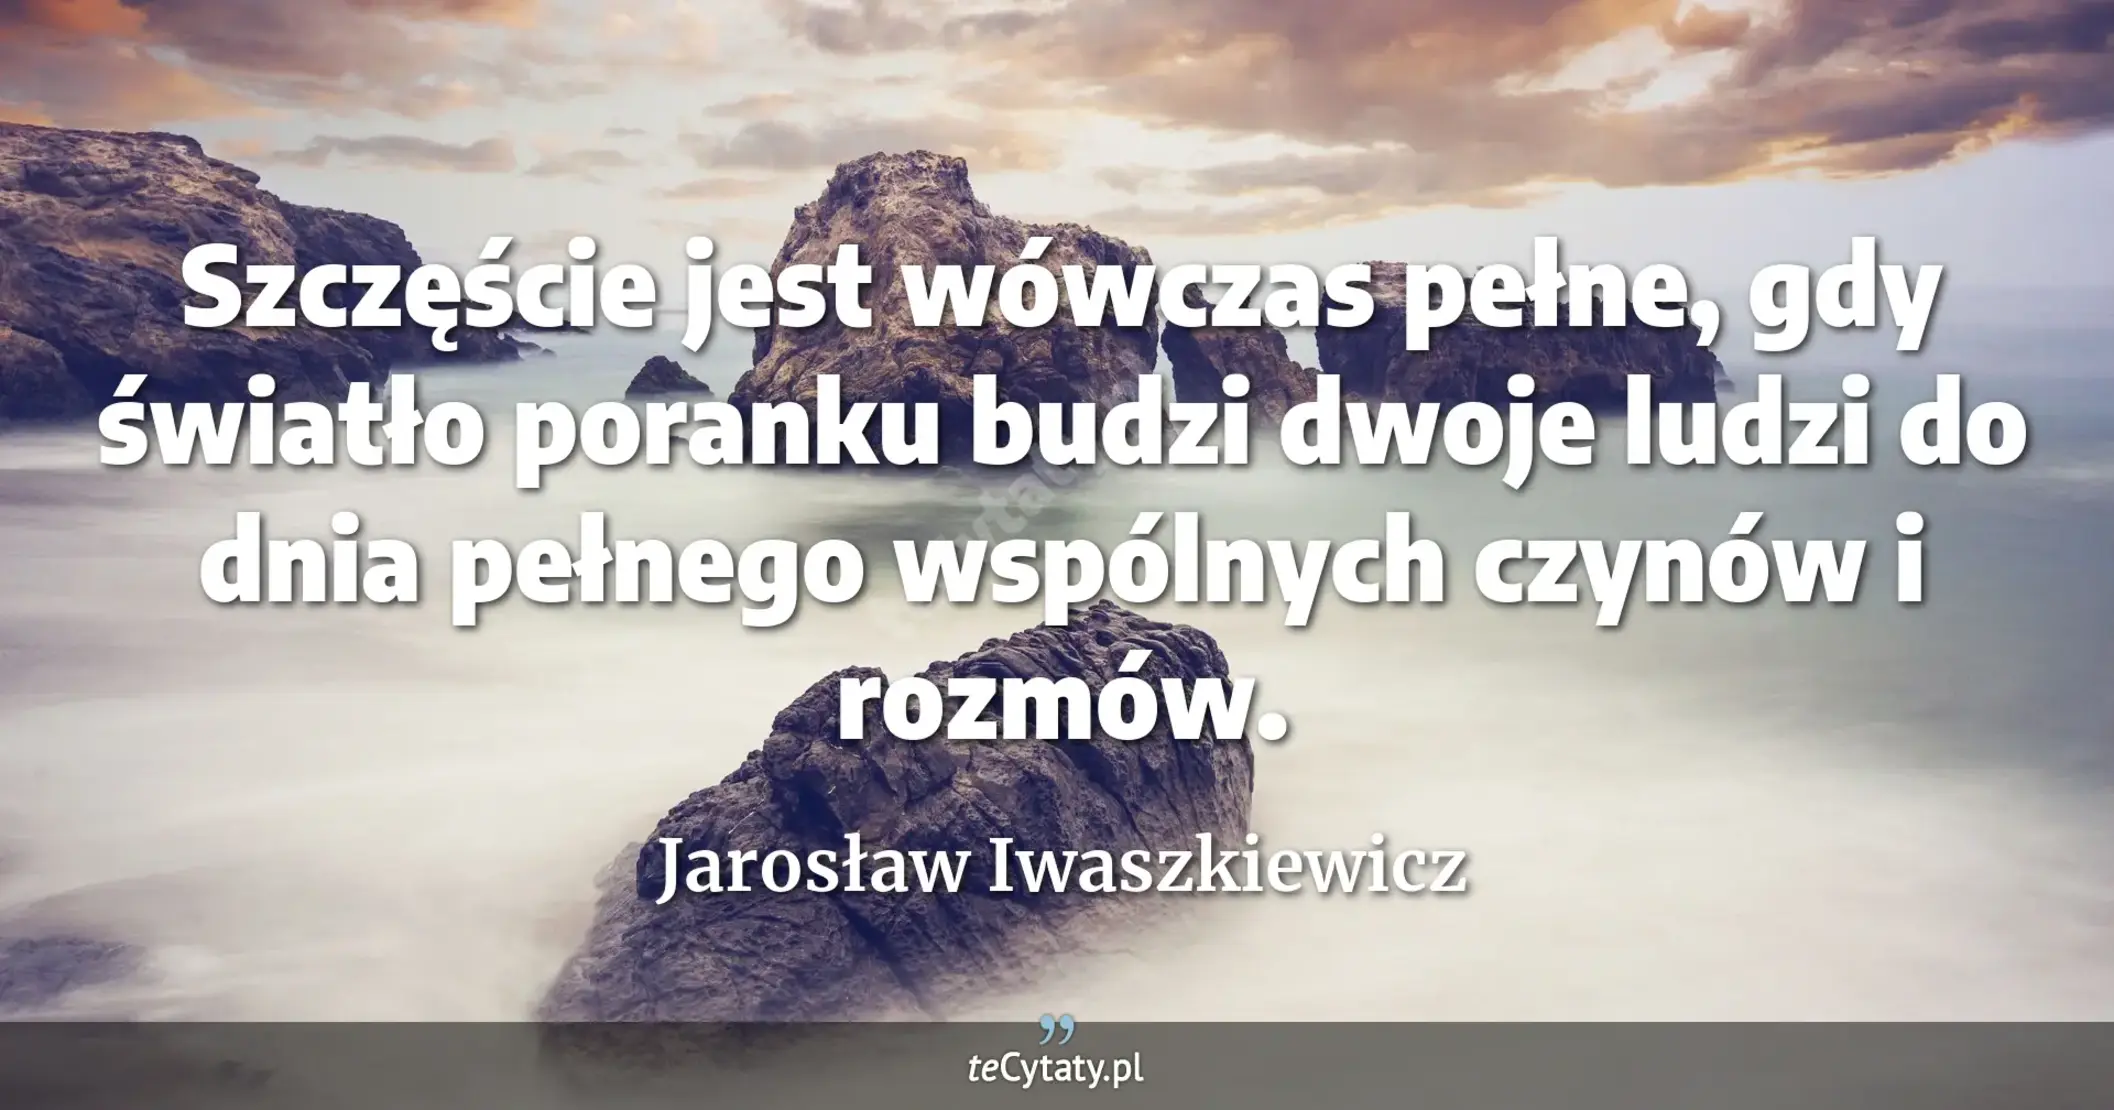 Szczęście jest wówczas pełne, gdy światło poranku budzi dwoje ludzi do dnia pełnego wspólnych czynów i rozmów. - Jarosław Iwaszkiewicz